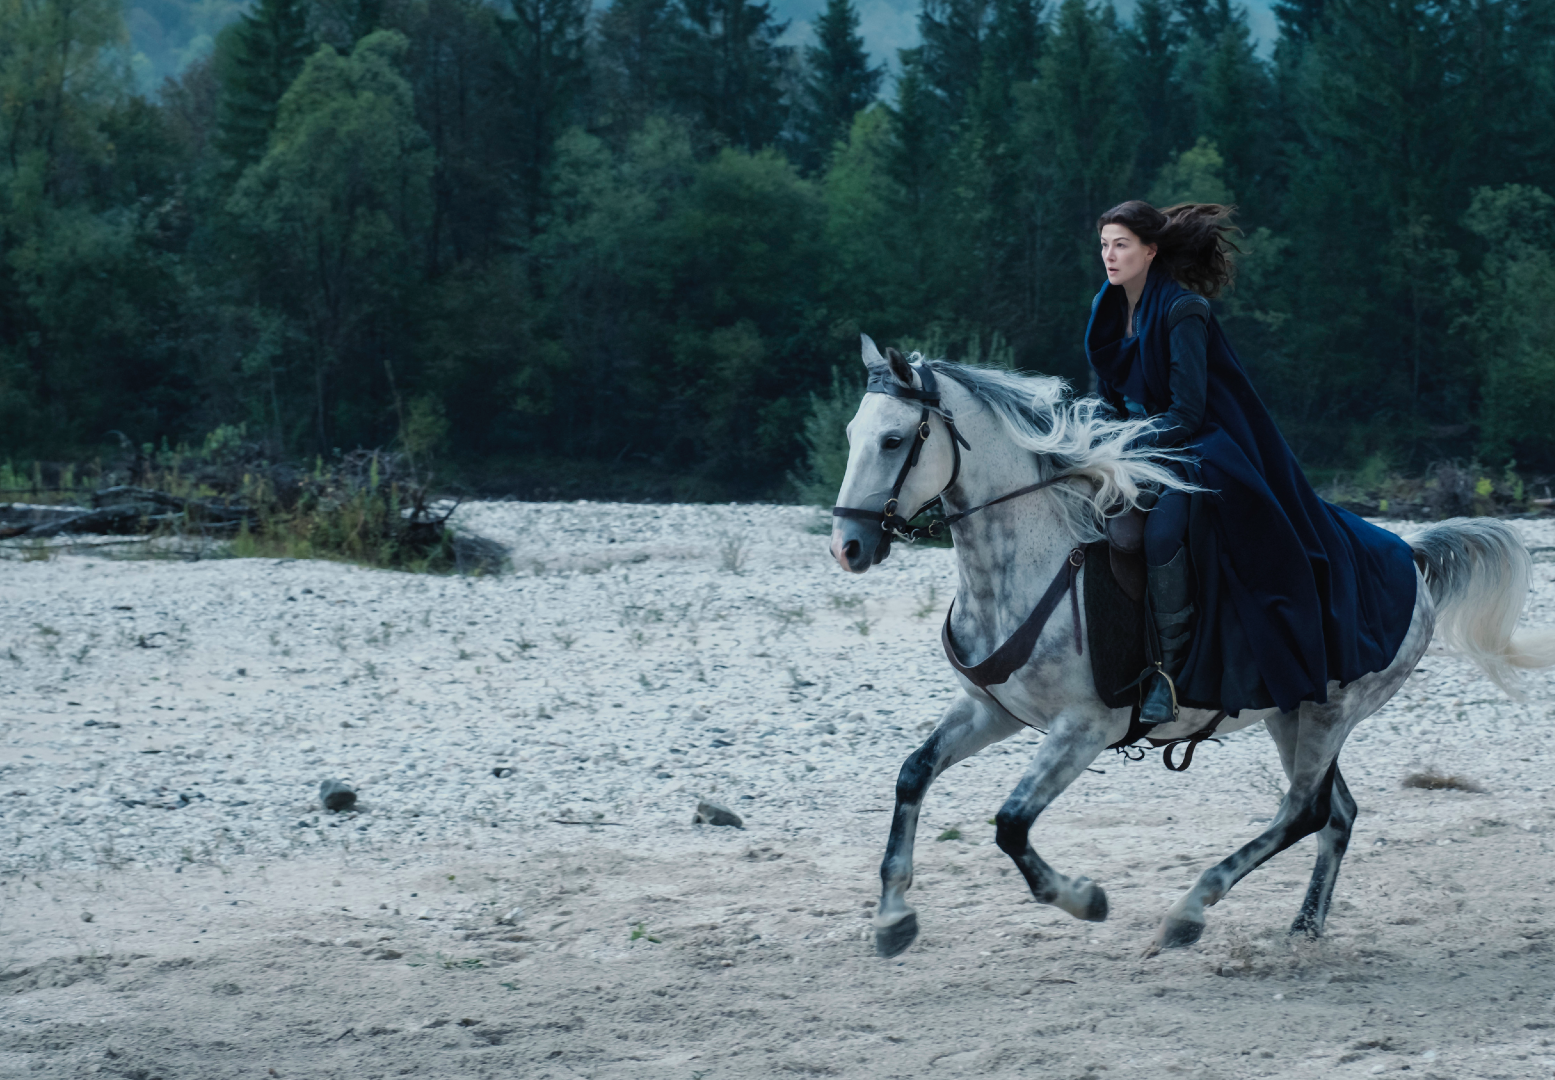 Moraine (Rosamund Pike) rides like the wind. (Image: Amazon Studios)